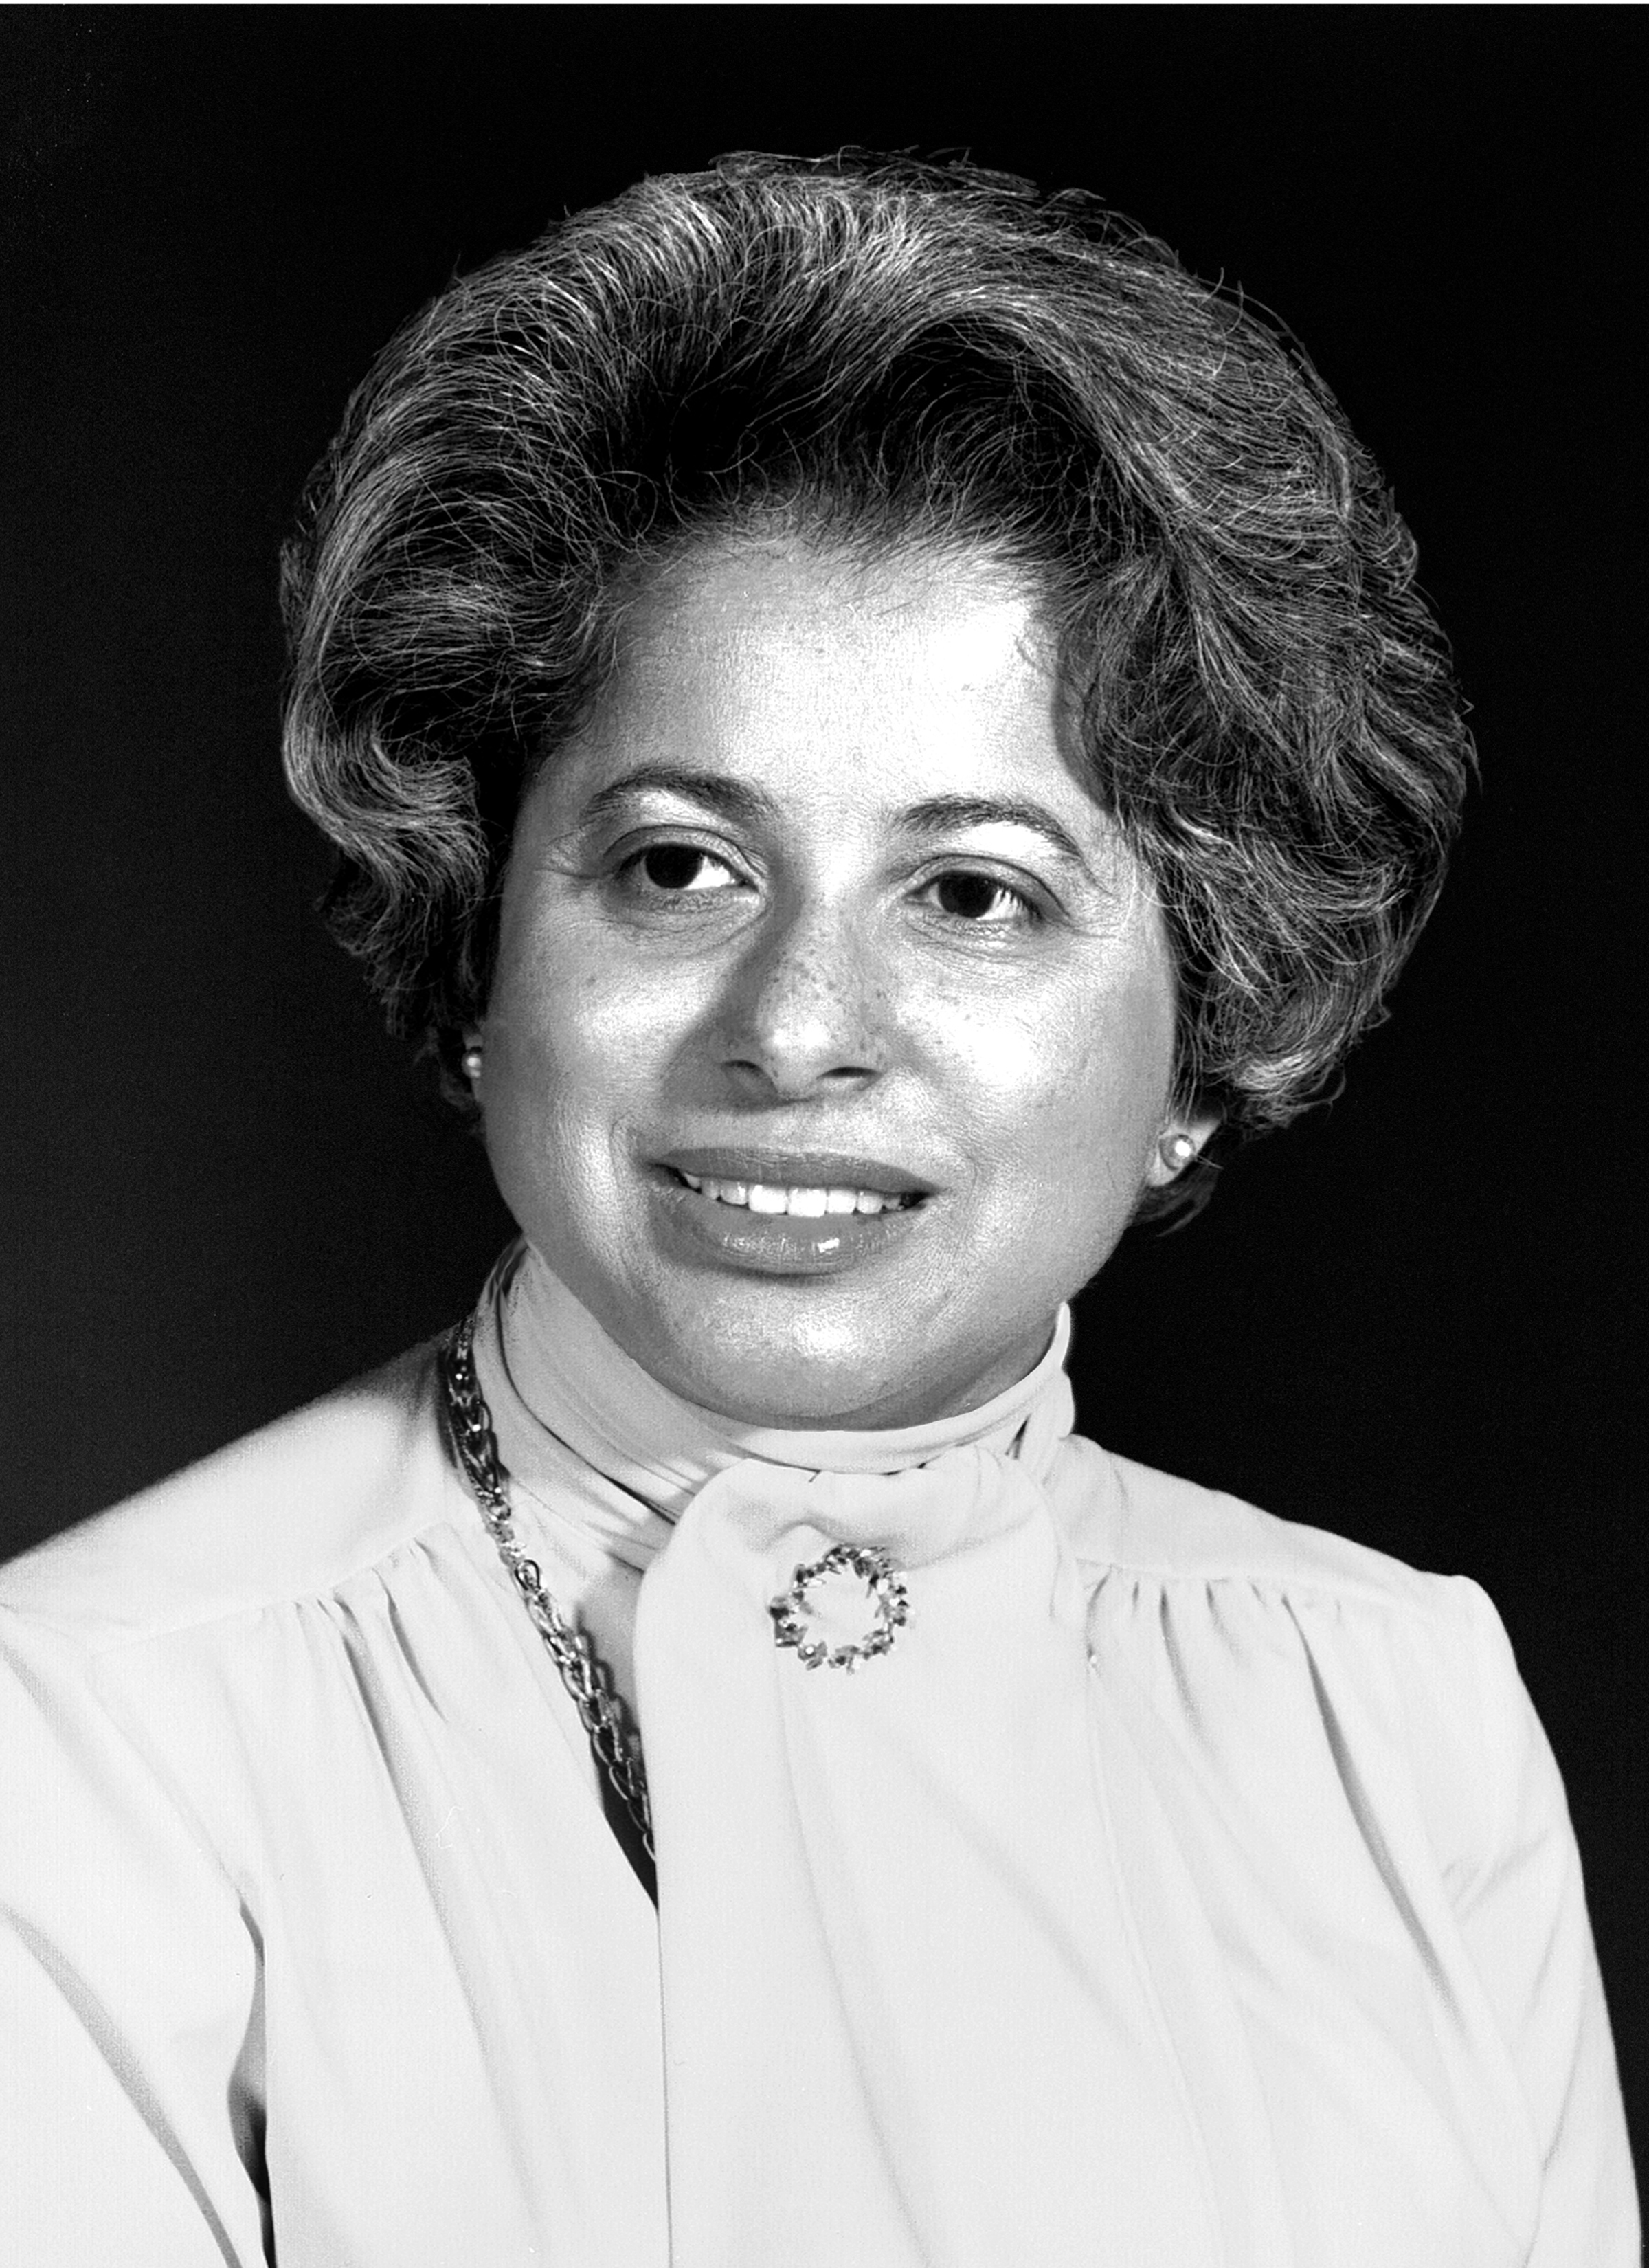 Patricia R. Harris official portrait